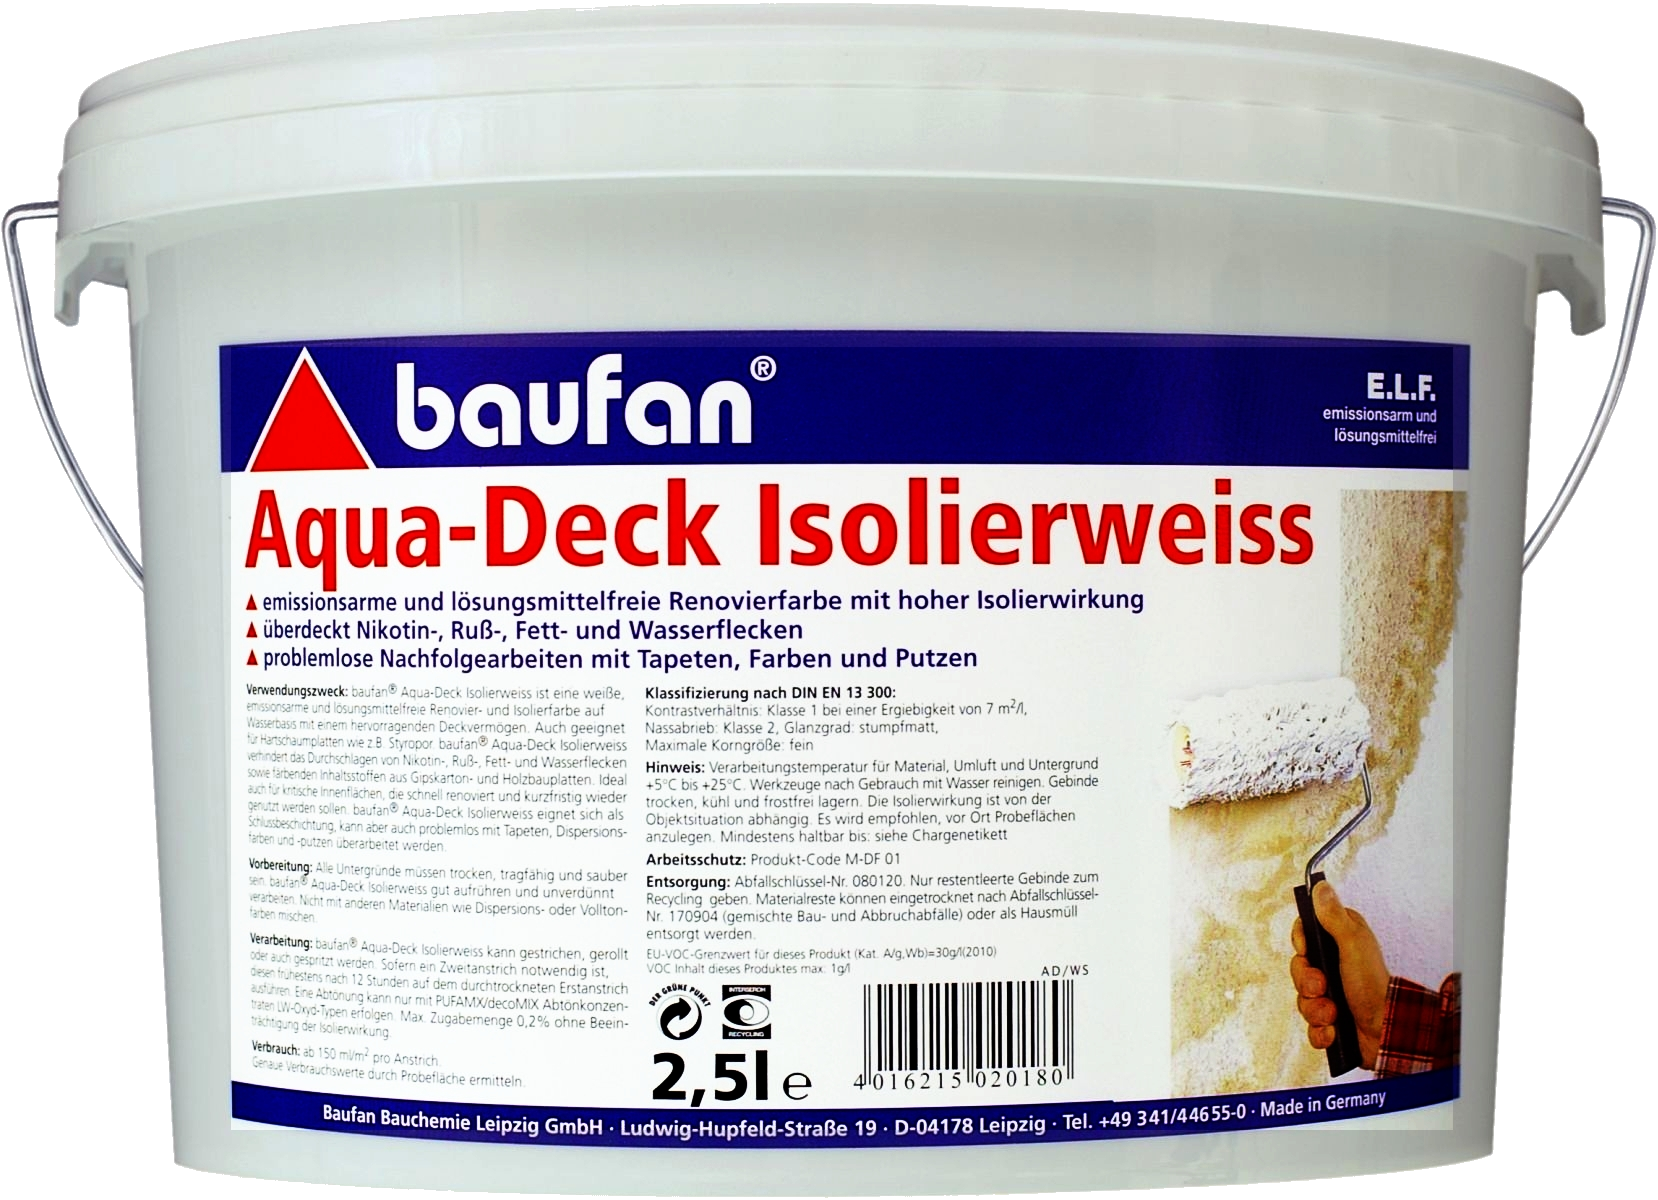 2,5 Liter Baufan Aqua-Deck Isolierweiß E.L.F. online kaufen